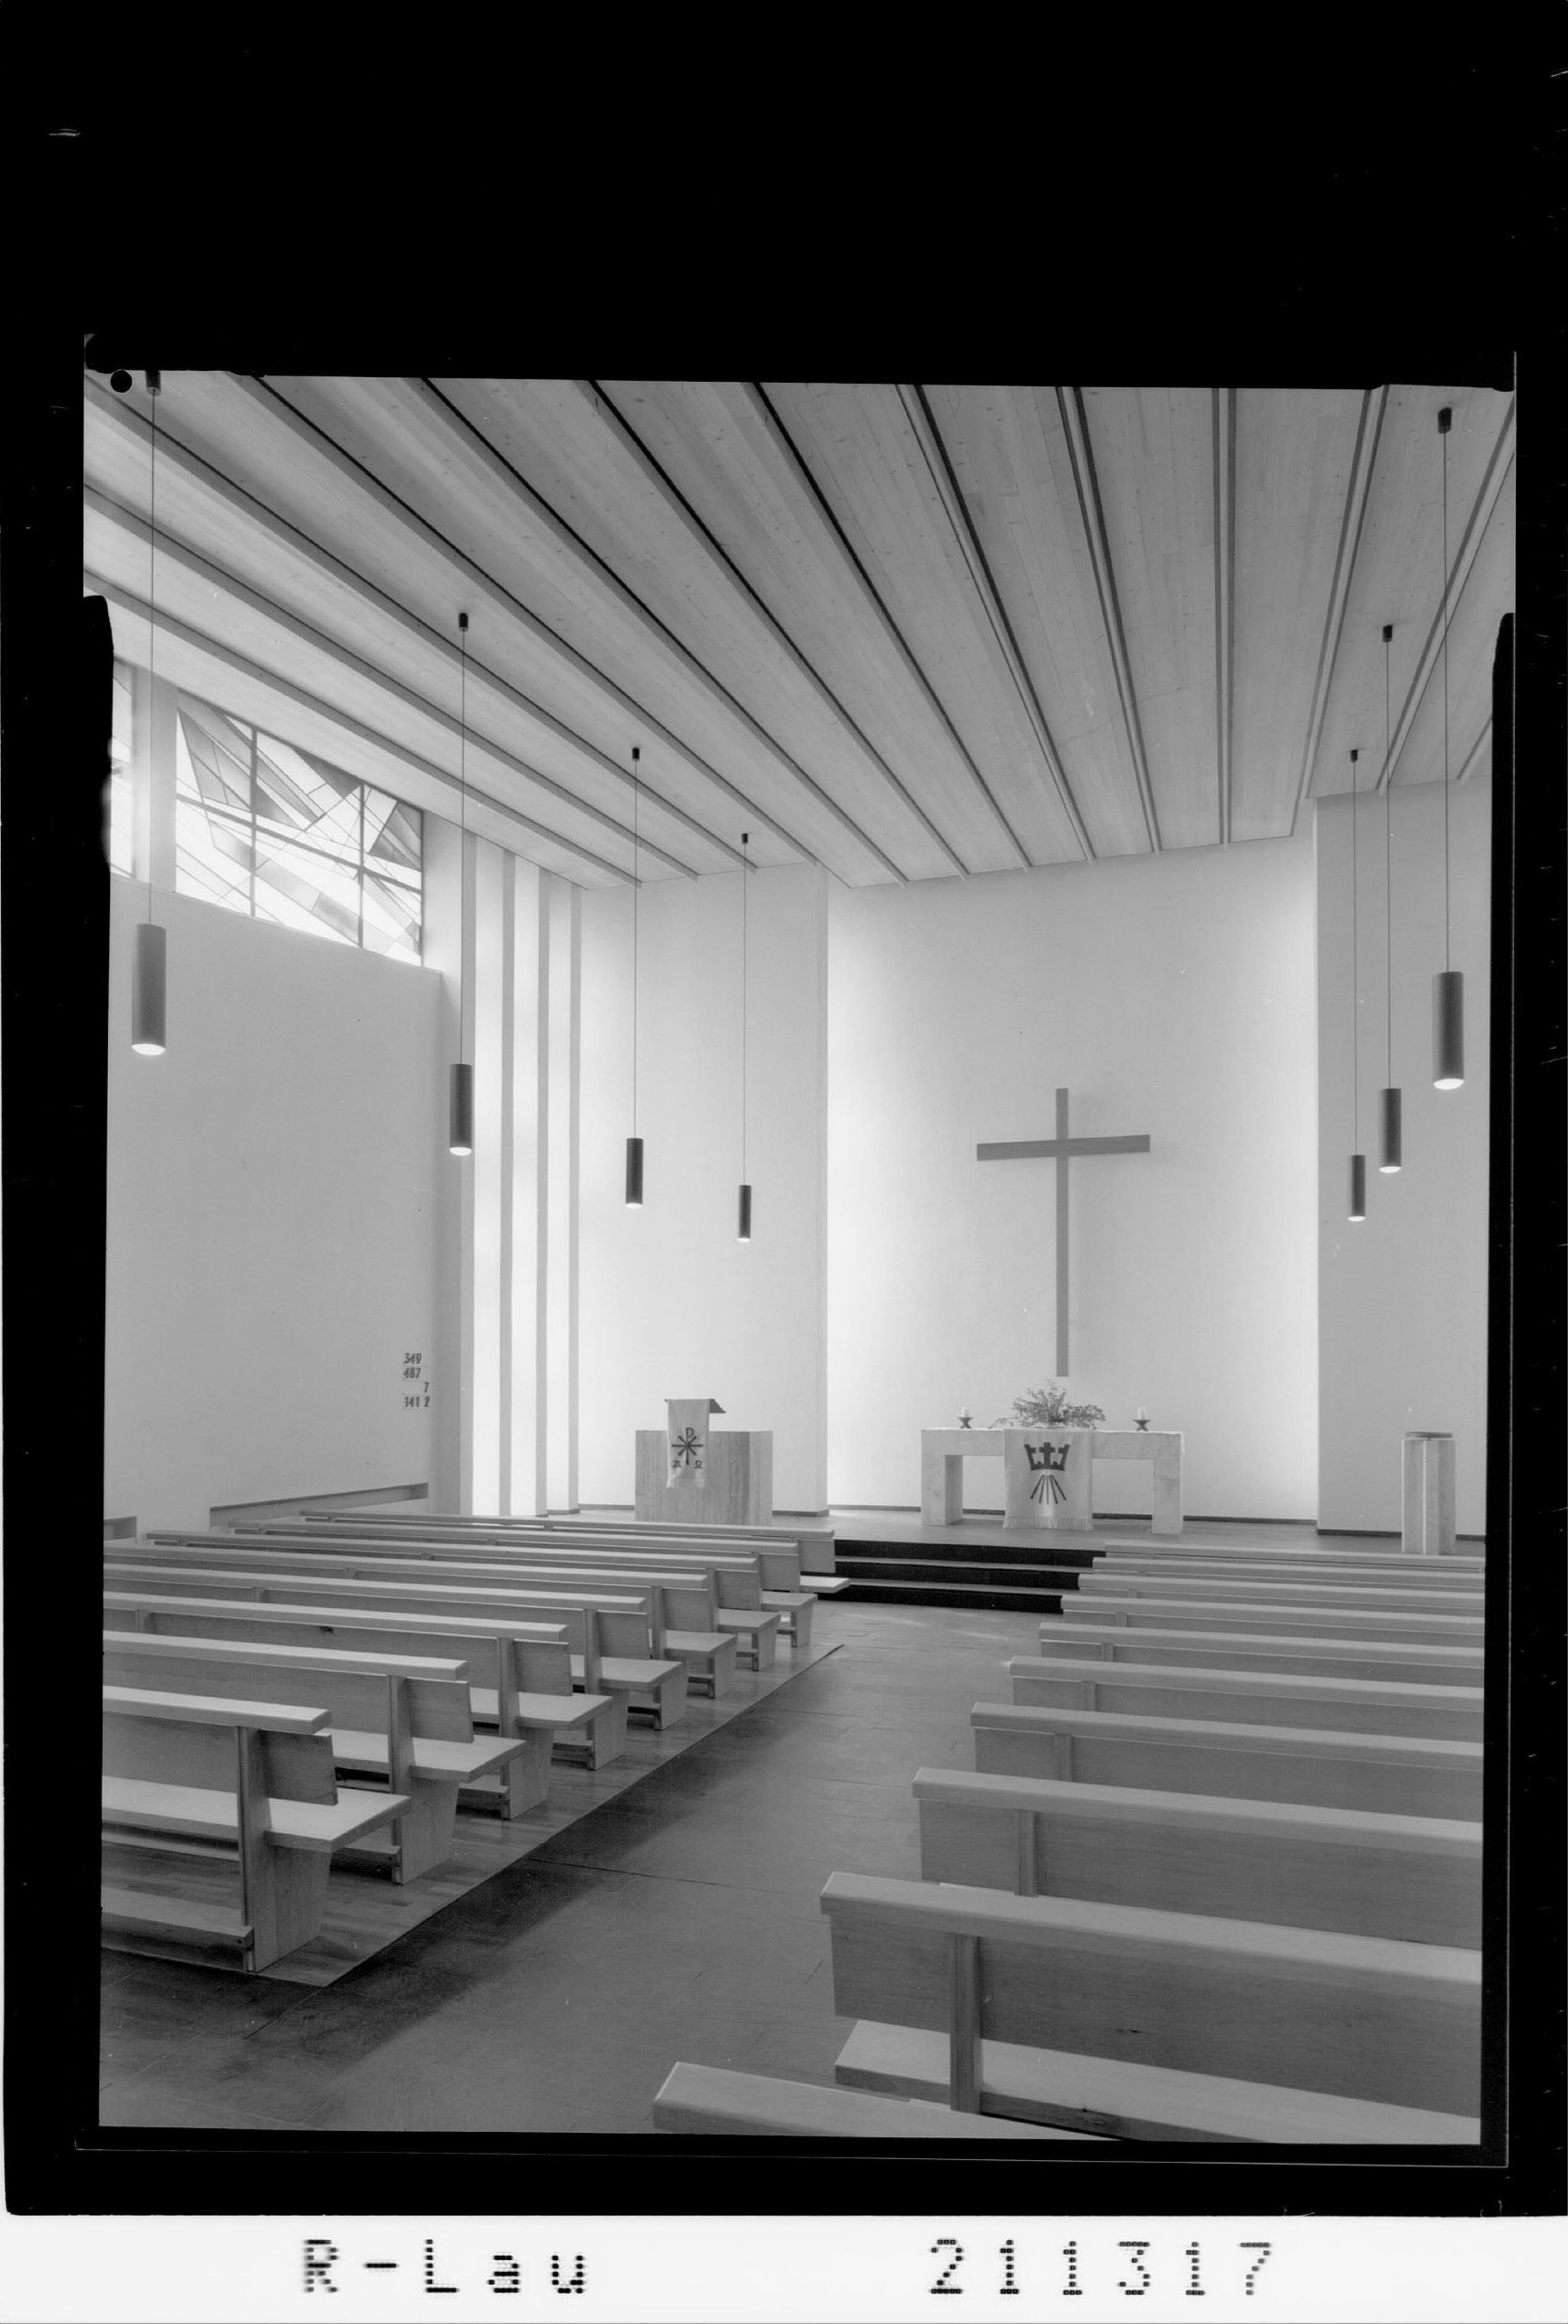 [Evangelische Kirche in Feldkirch]></div>


    <hr>
    <div class=